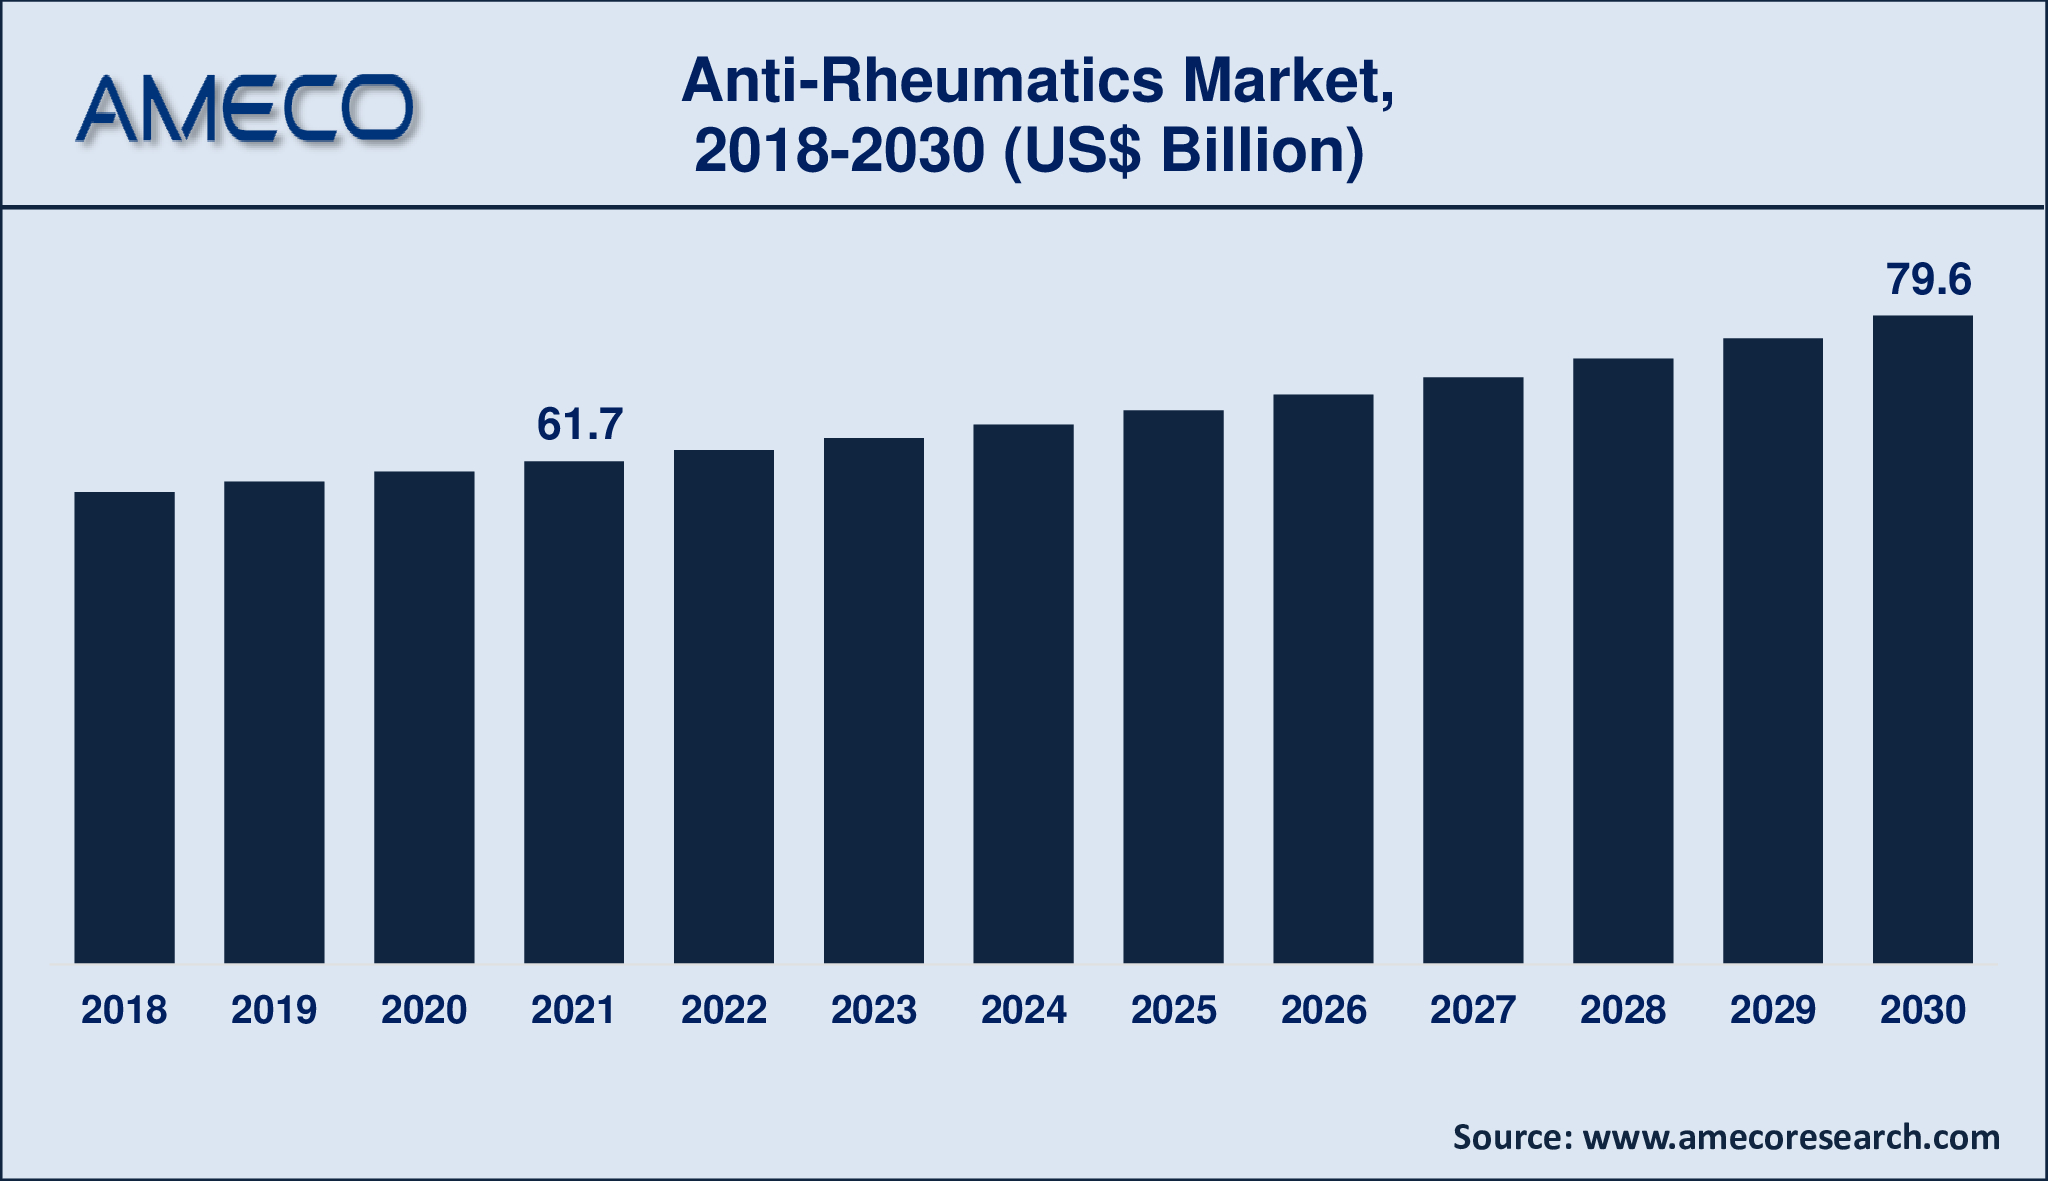 Anti-Rheumatics Market Size